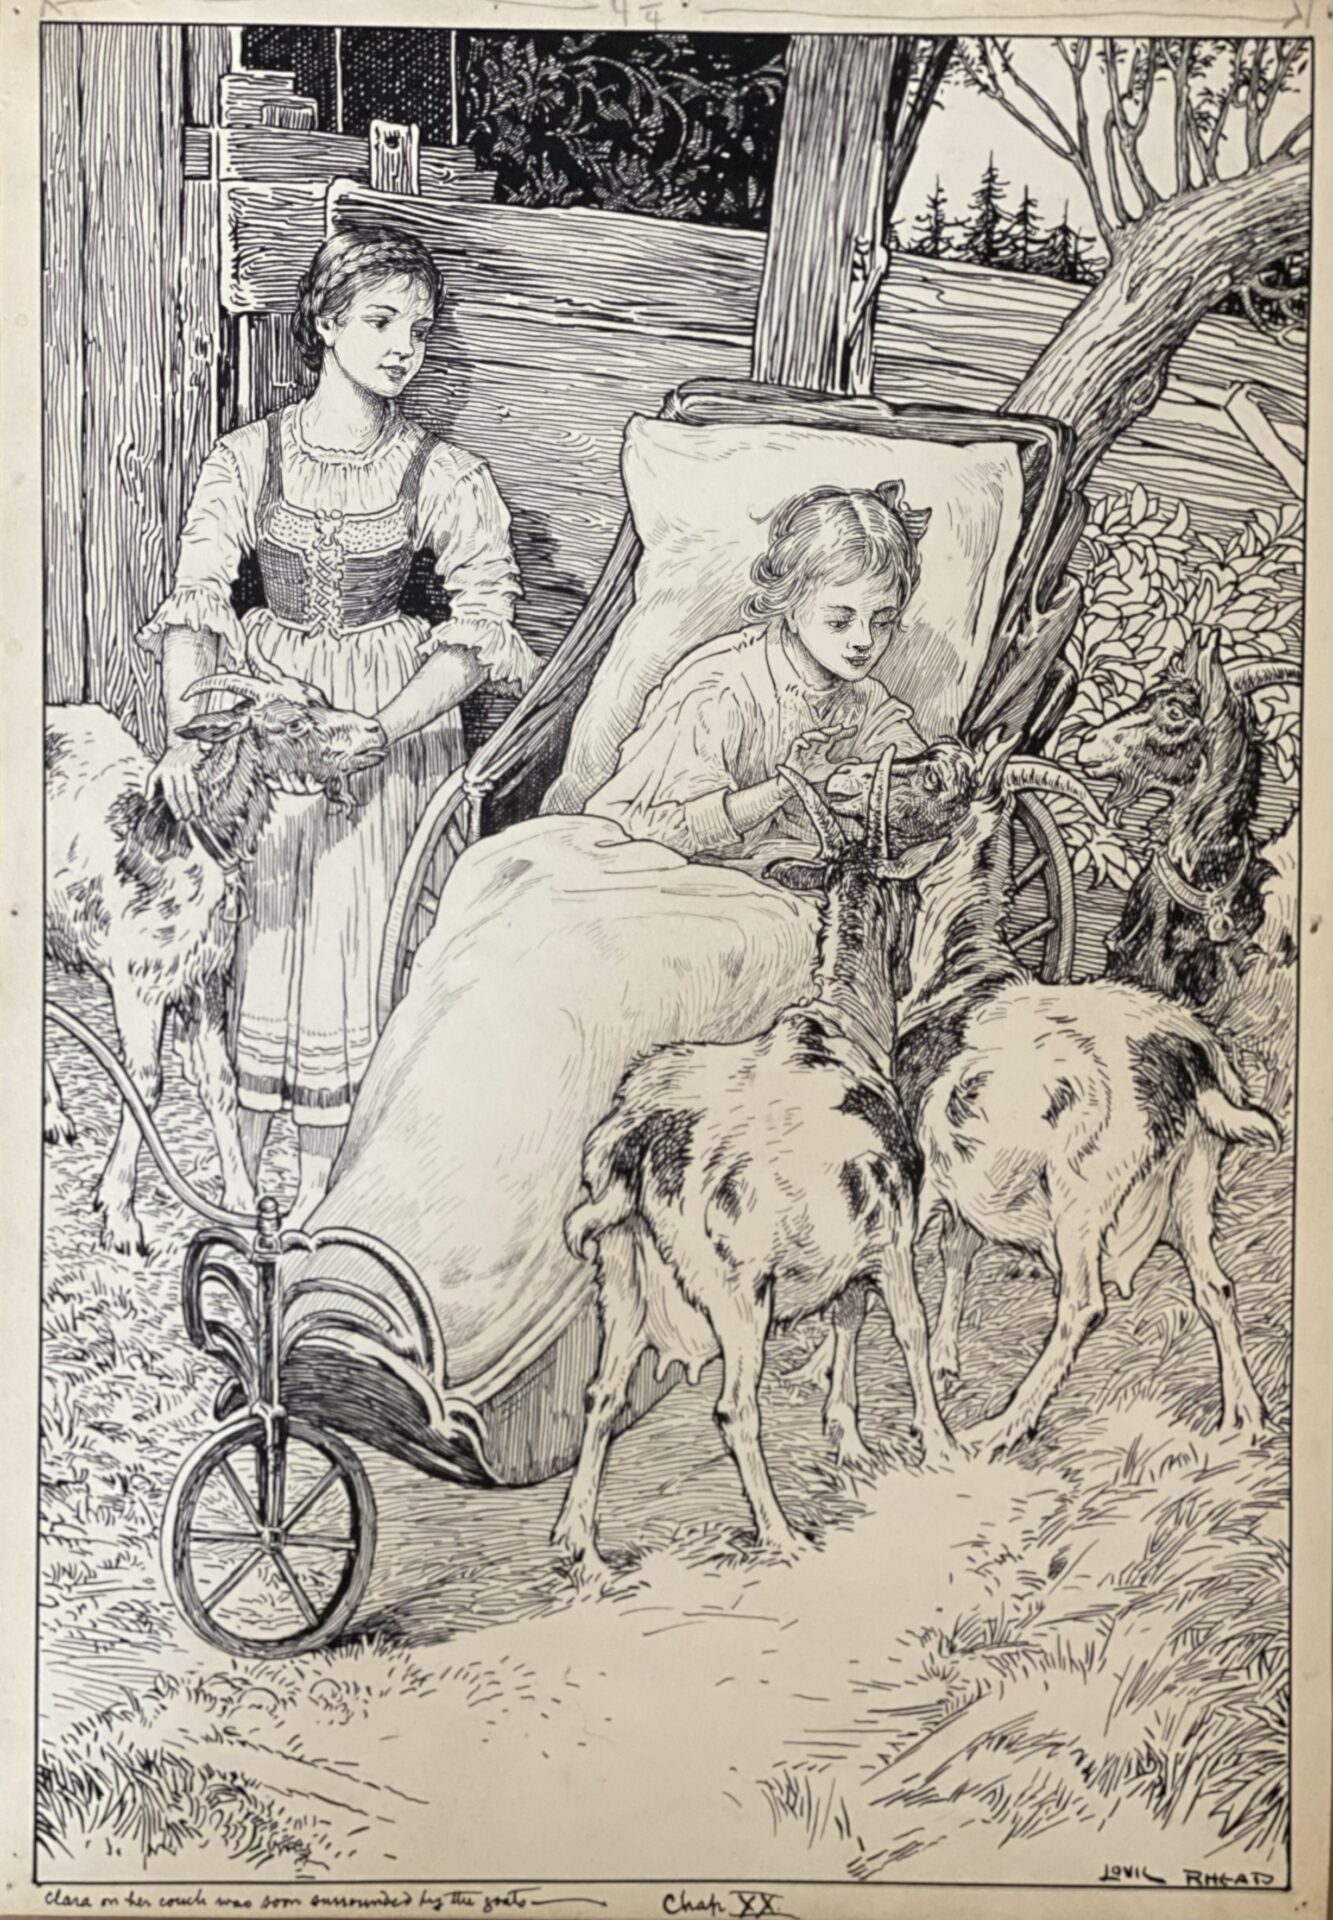 American Heidi illustration by Louis Rhead, 1924.